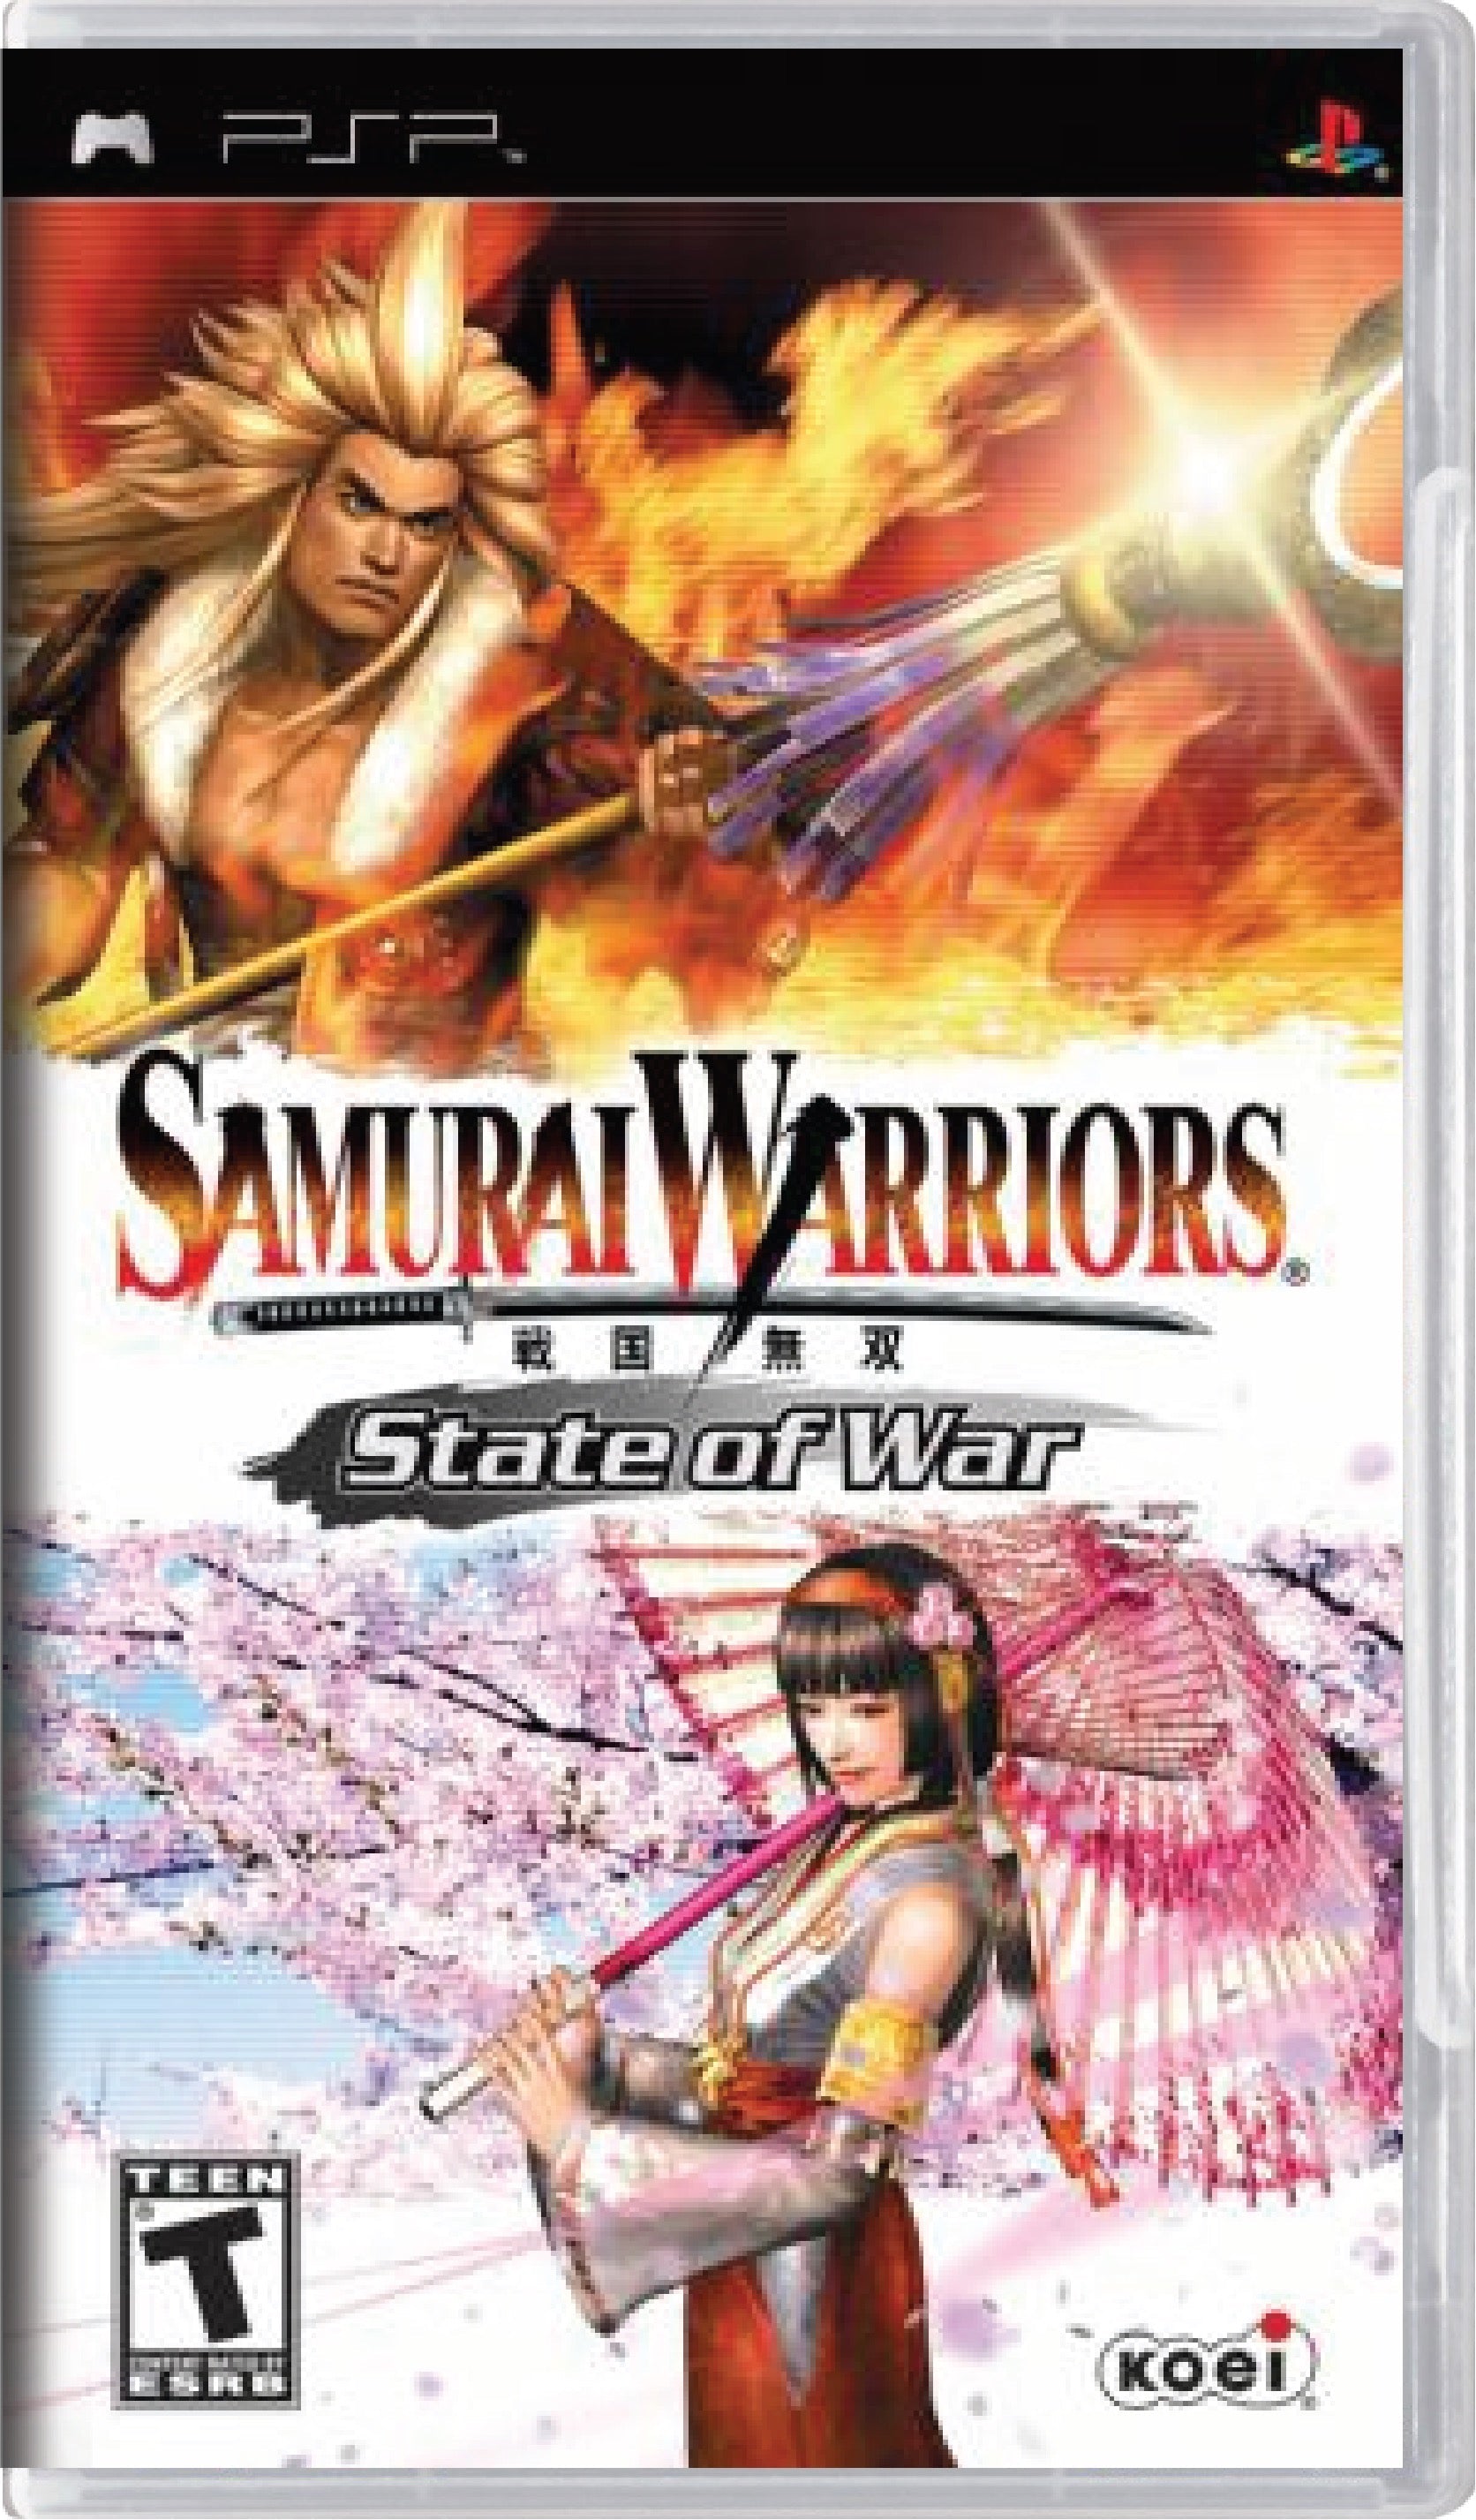 Samurai Warriors State of War Cover Art